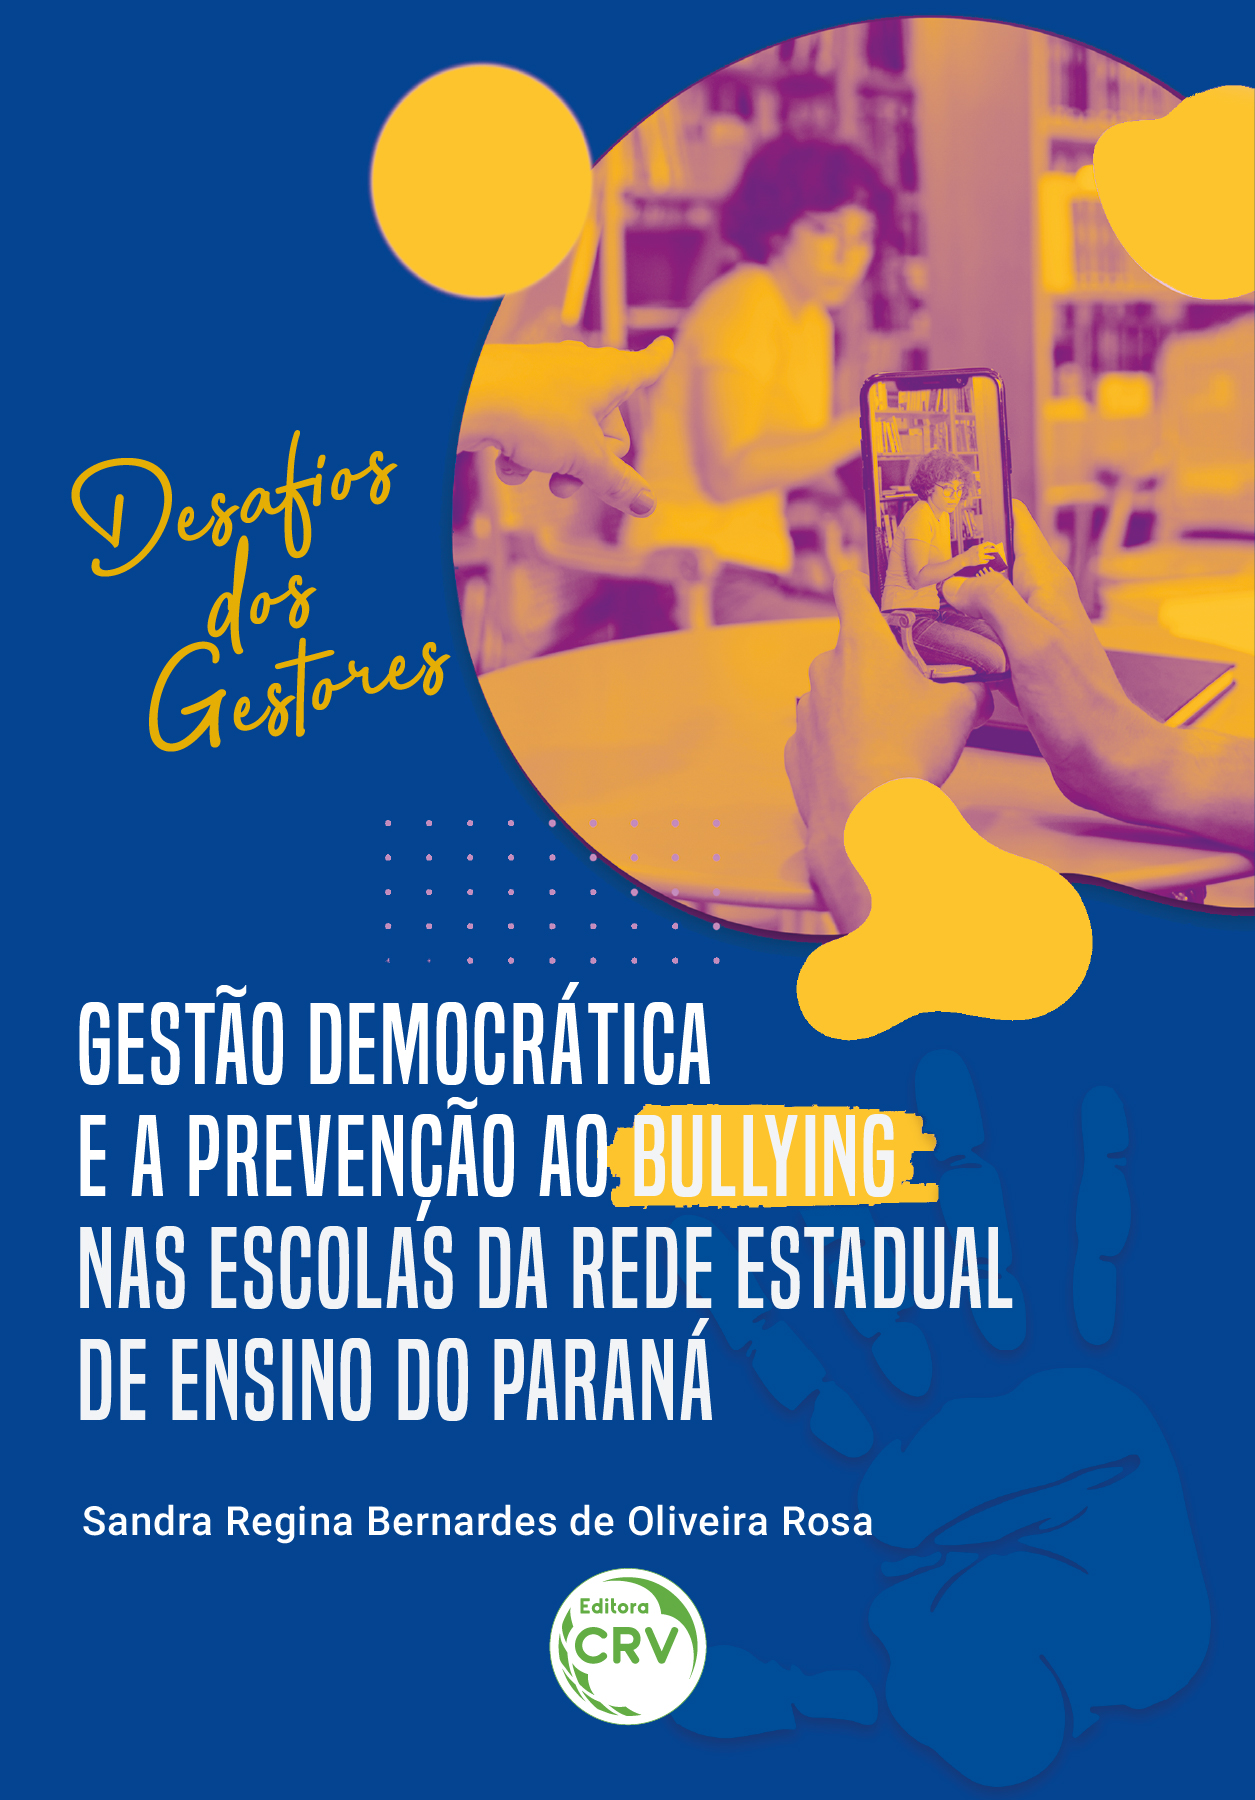 Capa do livro: Gestão democrática e a prevenção ao Bullying nas escolas da rede estadual de ensino do Paraná:<br> Desafios dos gestores